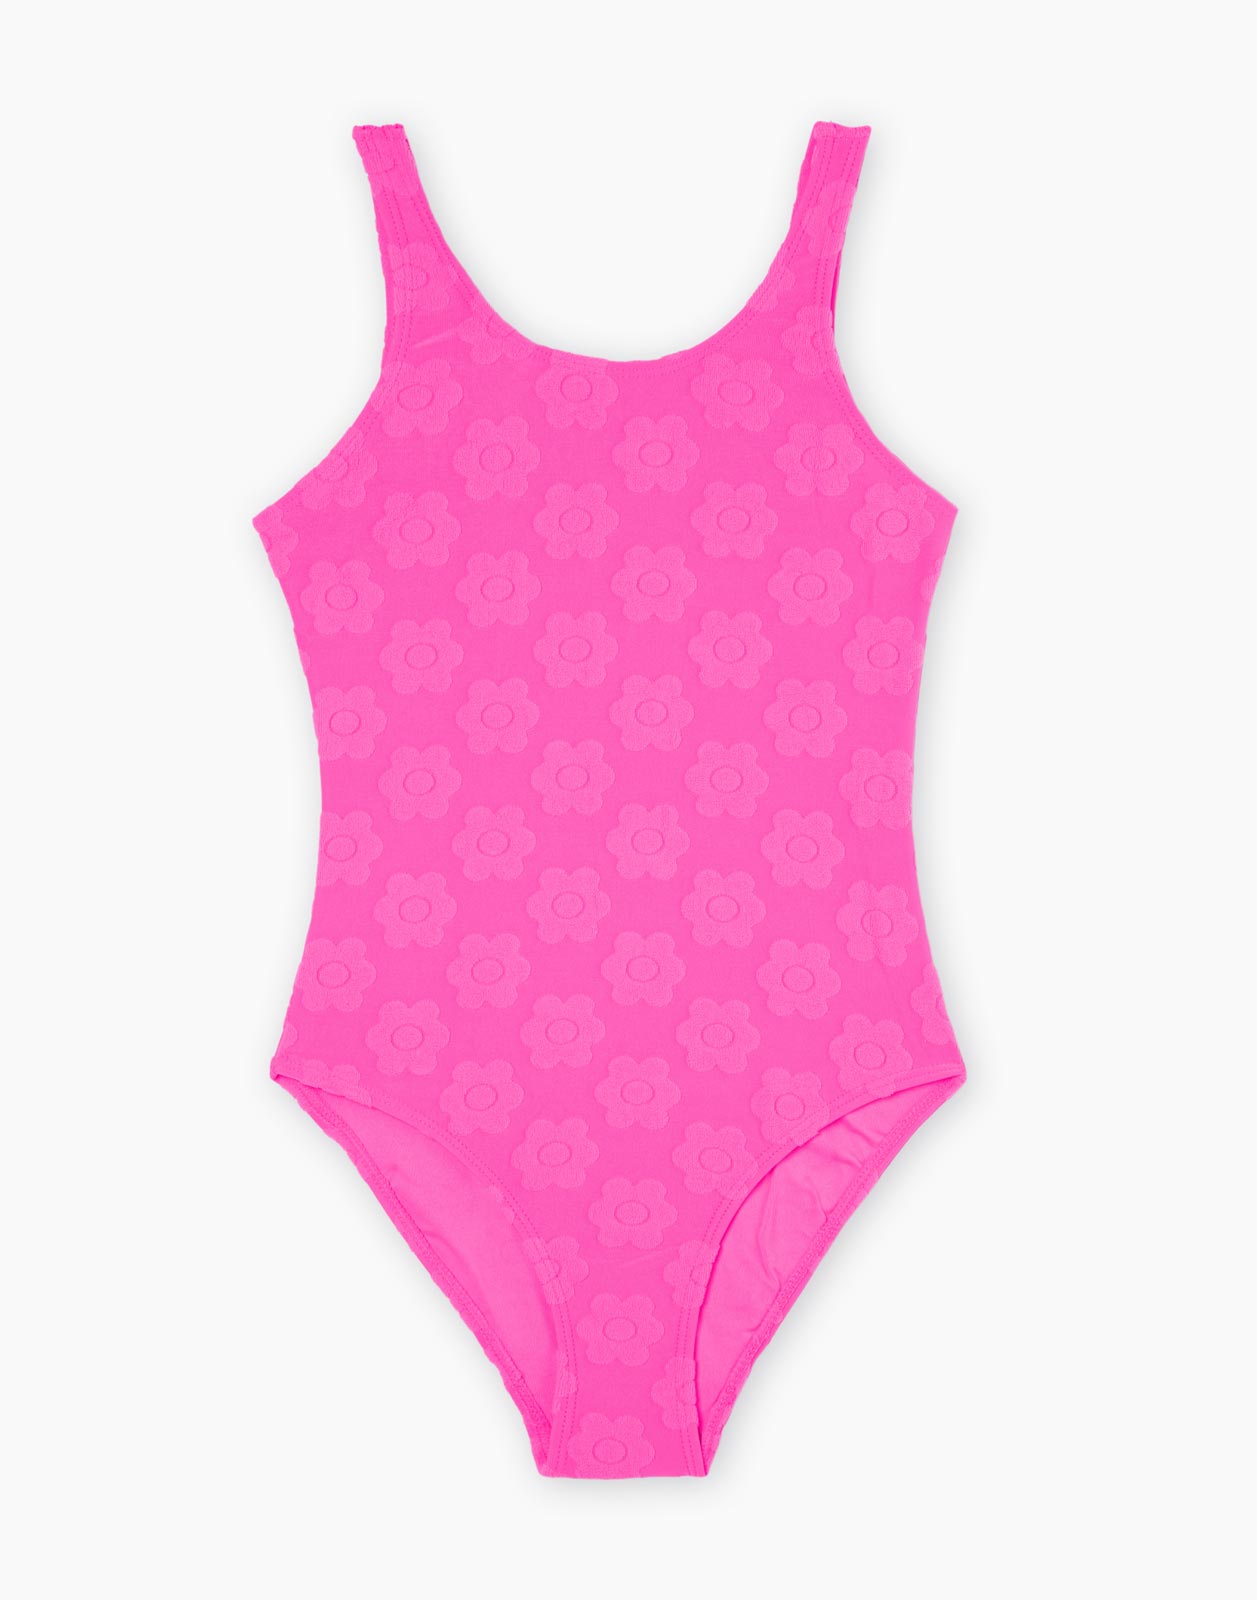 Ярко-розовый слитный купальник для девочки р.164